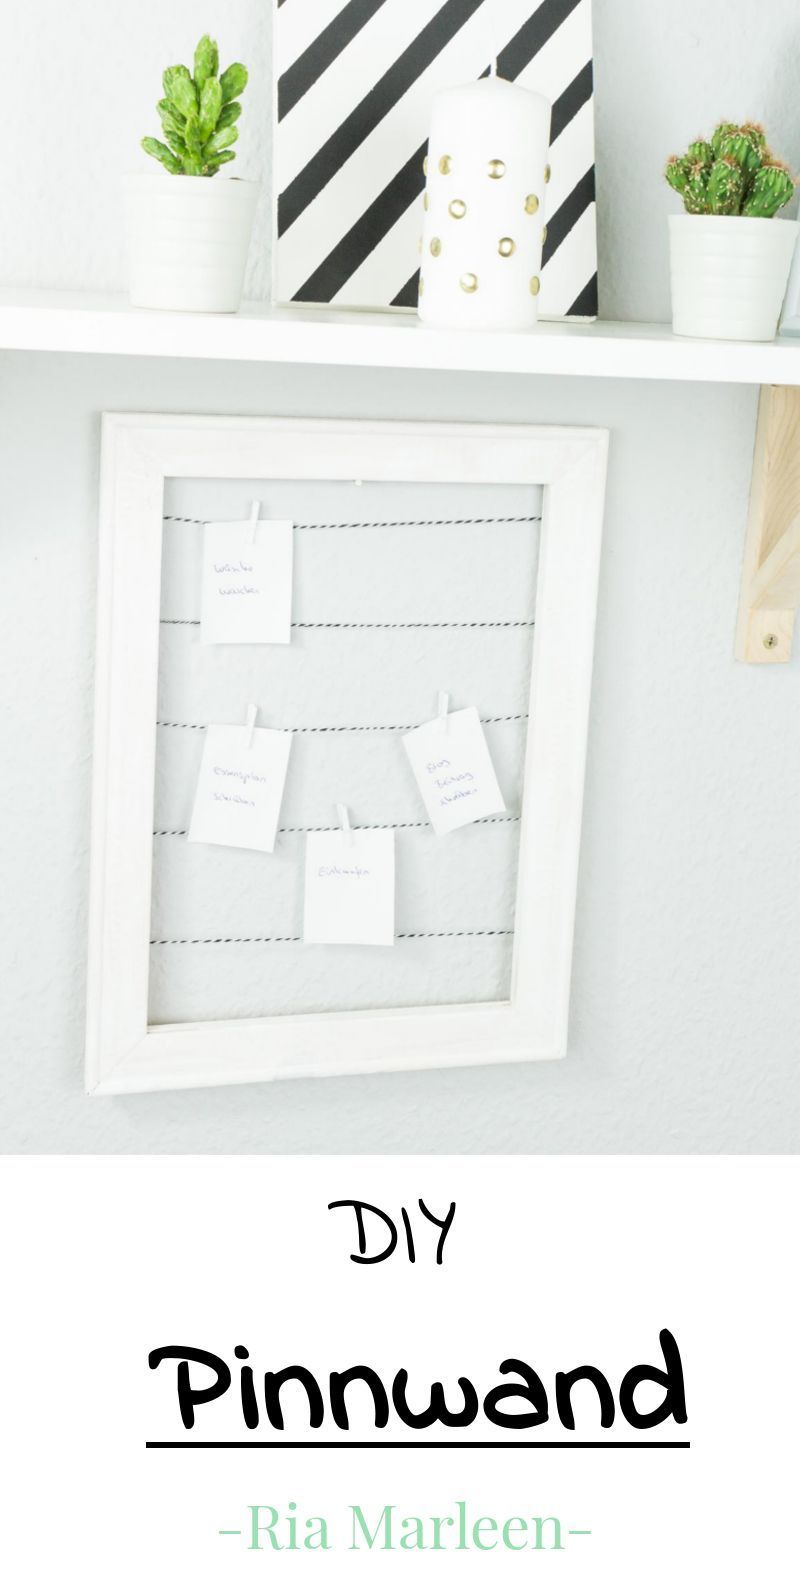 DIY Pinnwand aus Holzrahmen basteln - DIY Pinnwand aus Holzrahmen basteln -   16 diy Tumblr gifts ideas